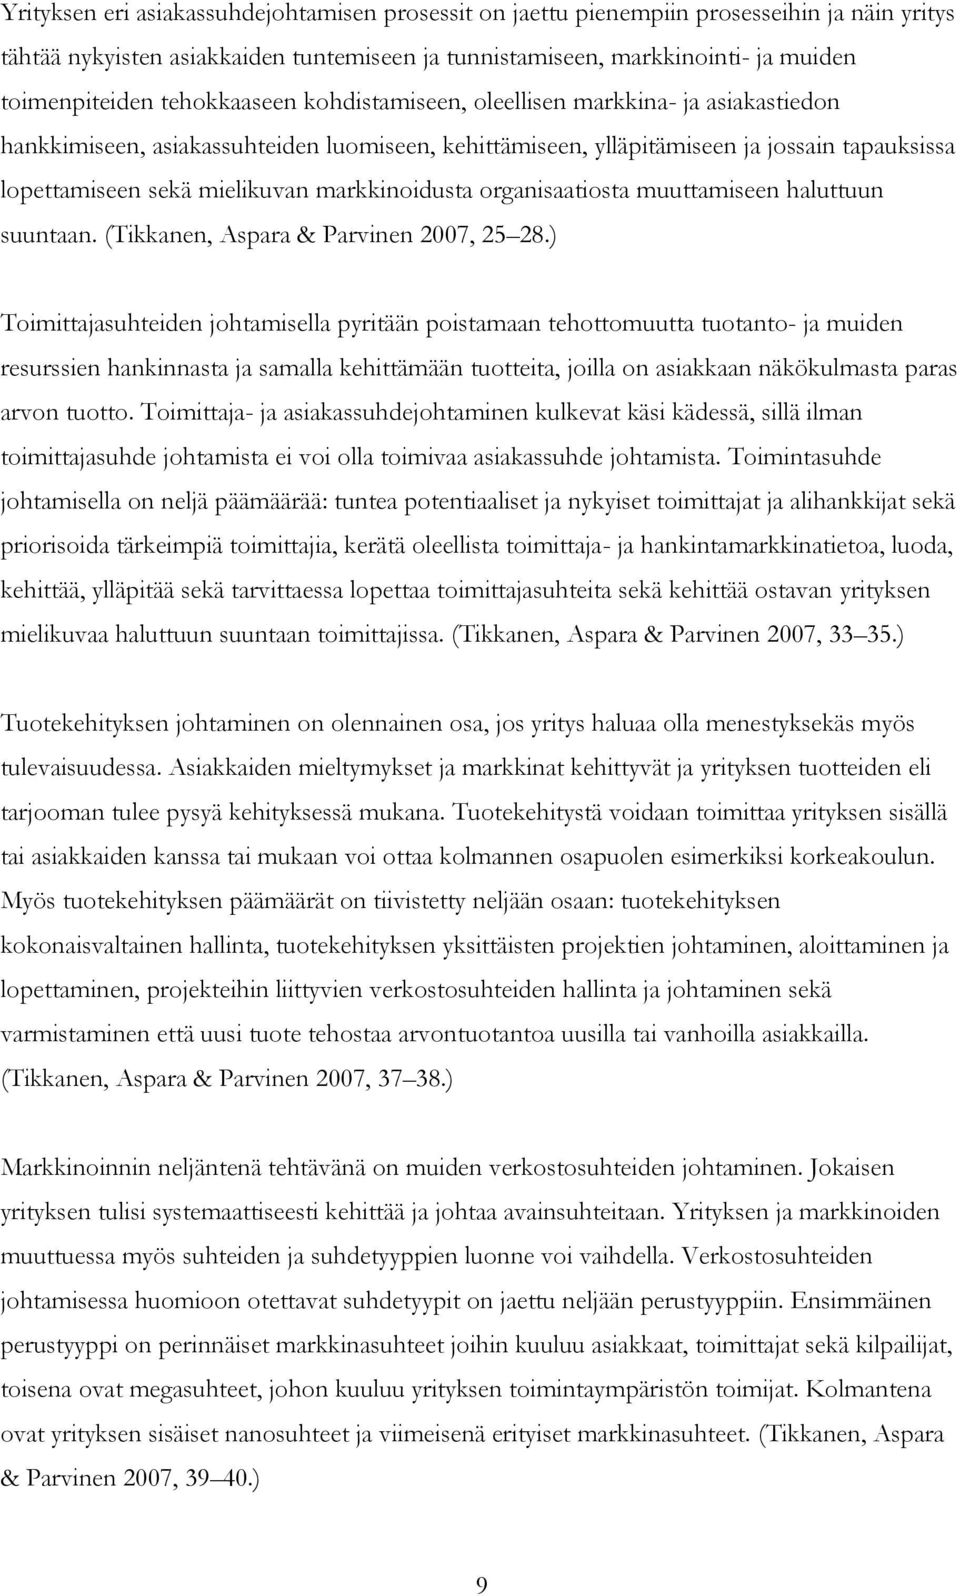 markkinoidusta organisaatiosta muuttamiseen haluttuun suuntaan. (Tikkanen, Aspara & Parvinen 2007, 25 28.